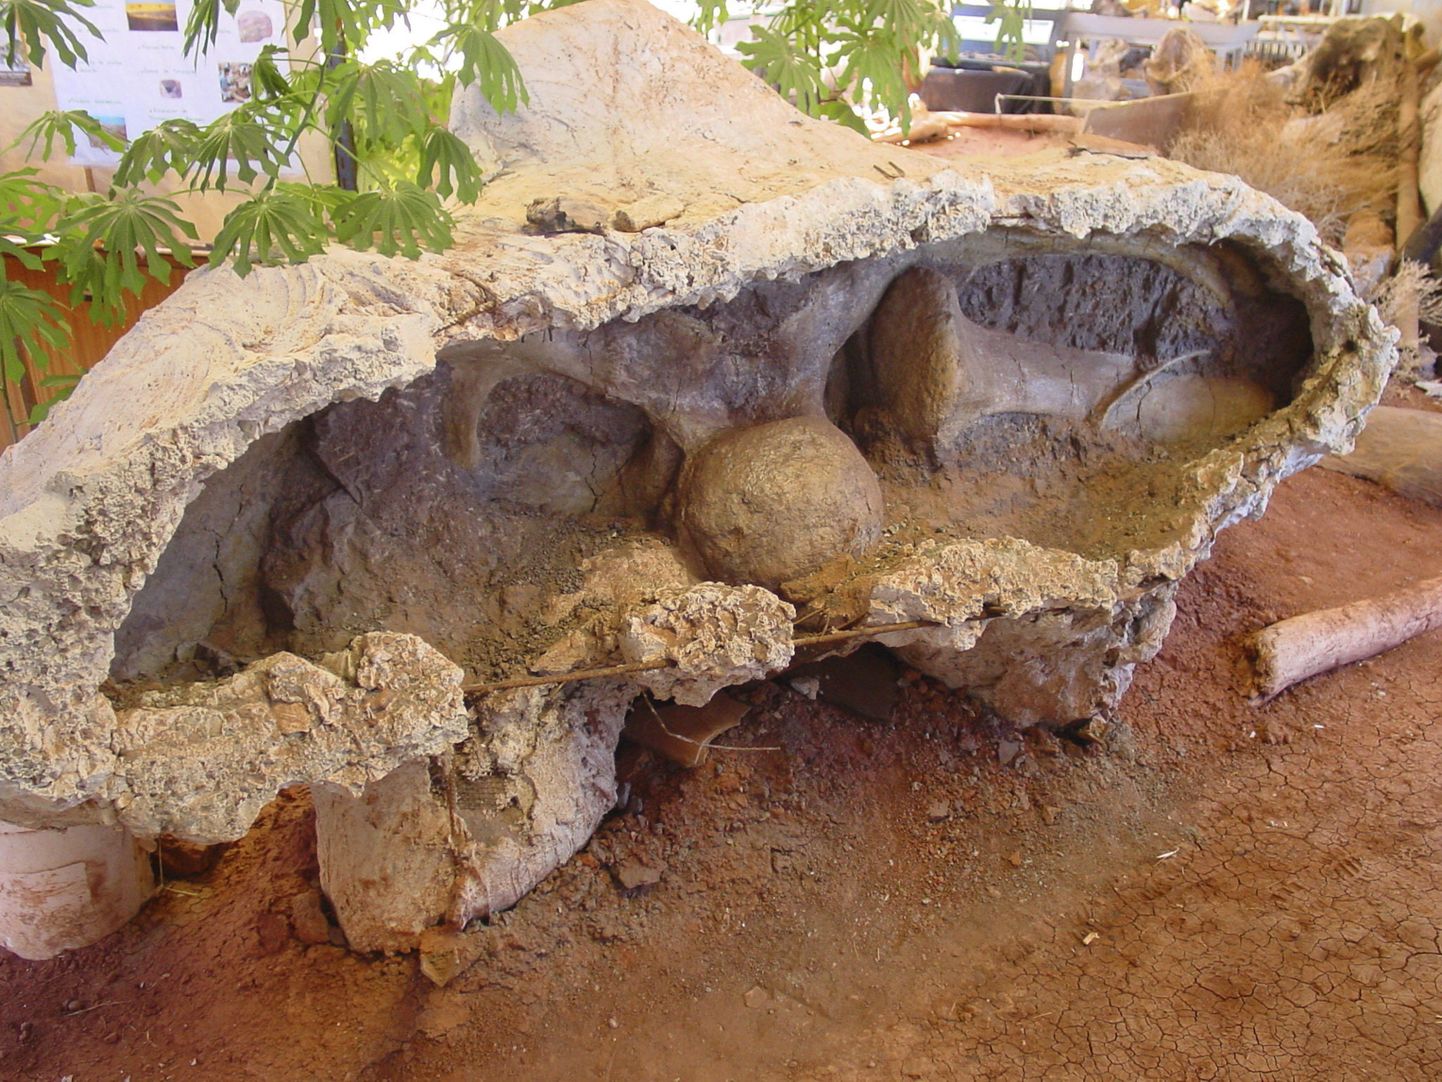 Uue dinosauruseliigi fossiil